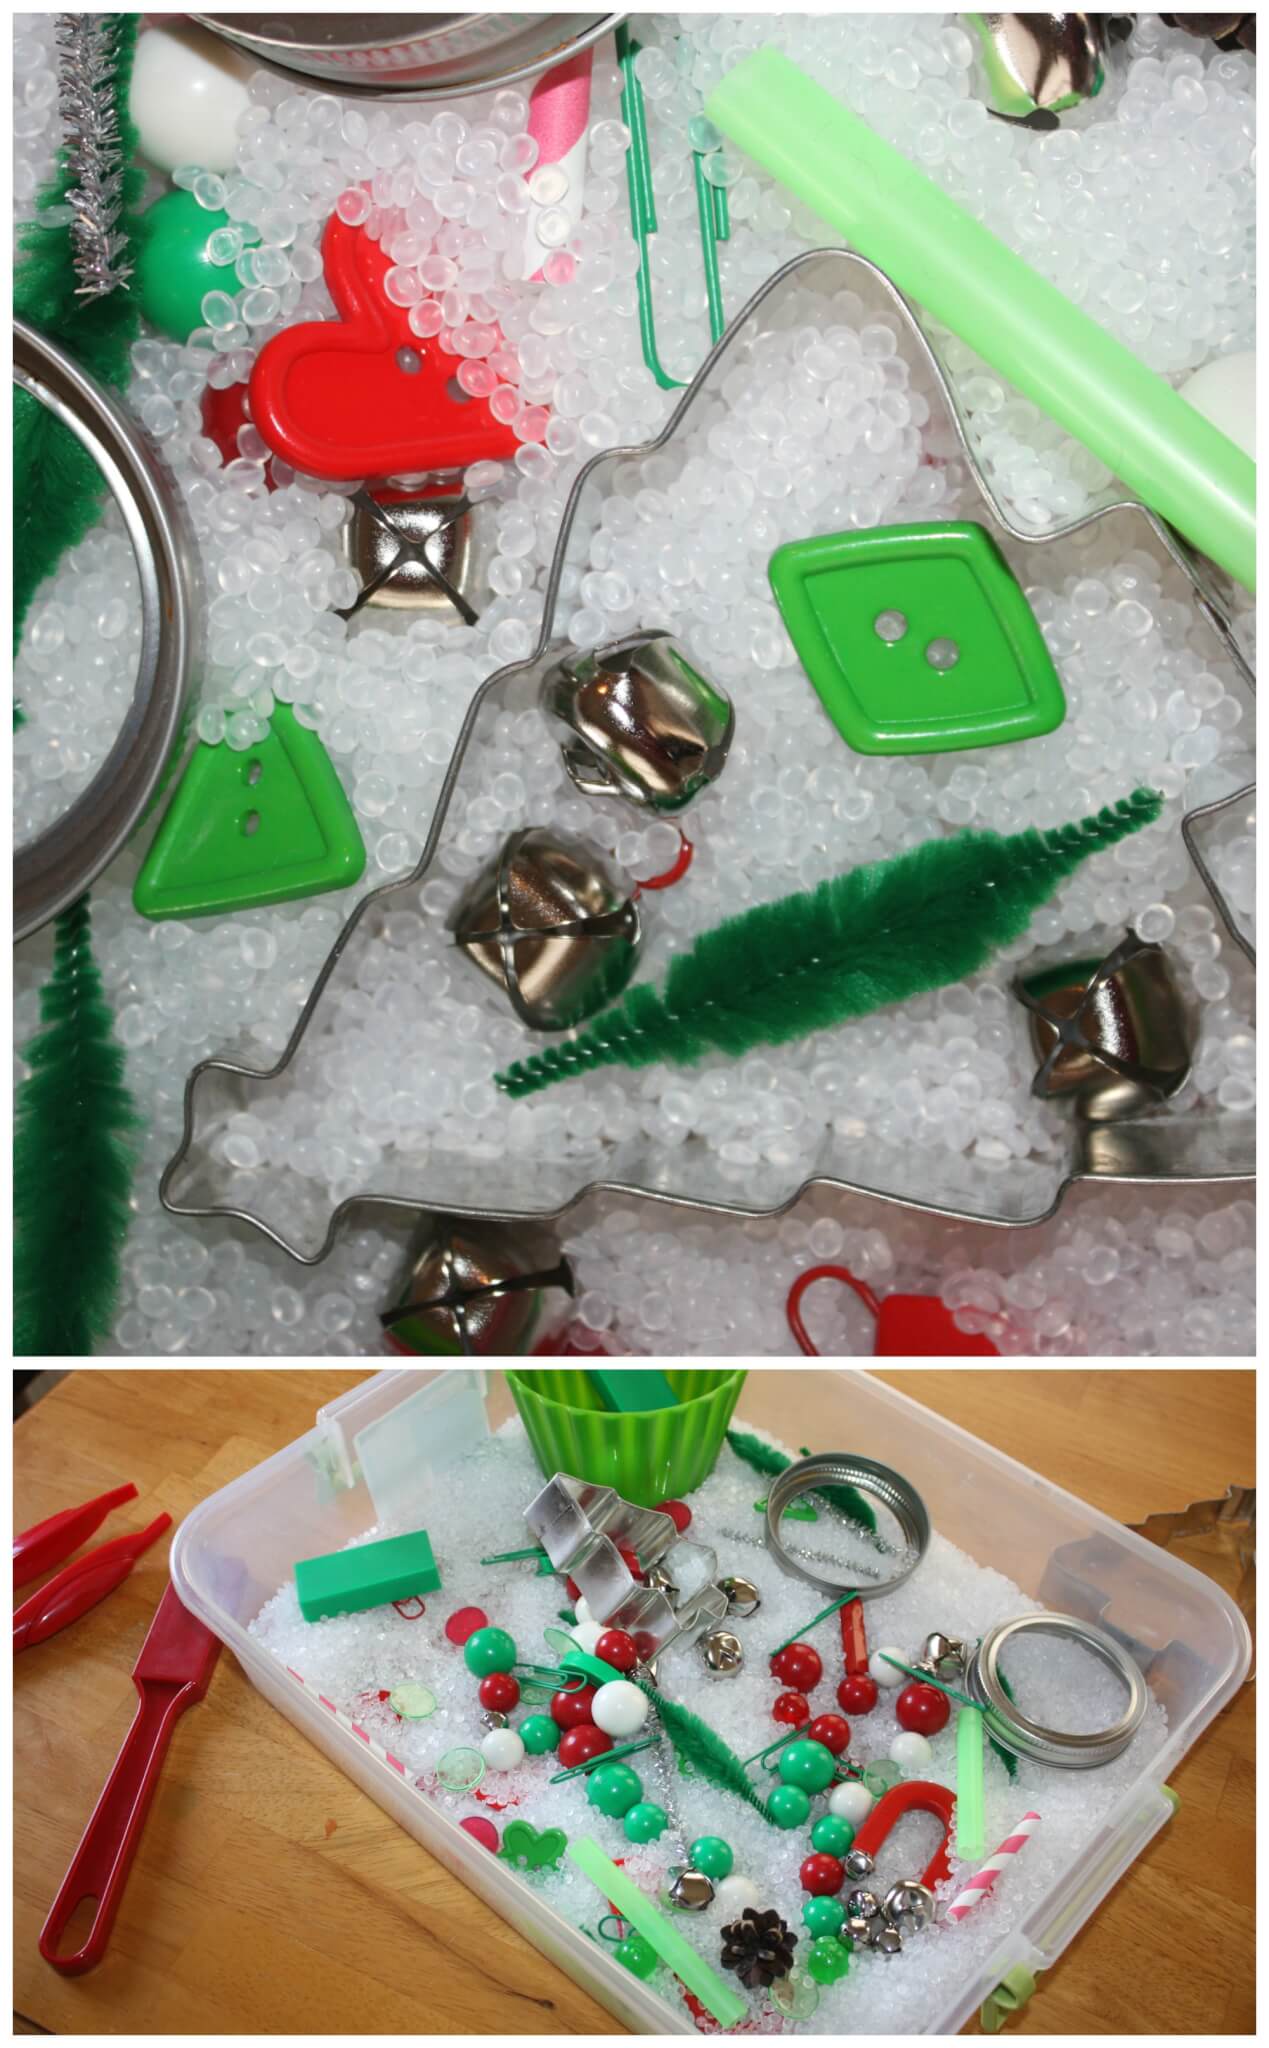 https://littlebinsforlittlehands.com/wp-content/uploads/2014/11/Christmas-Sensory-Bin-Magnet-Sensory-Play-Close-up-of-sensory-bin-filler.jpg